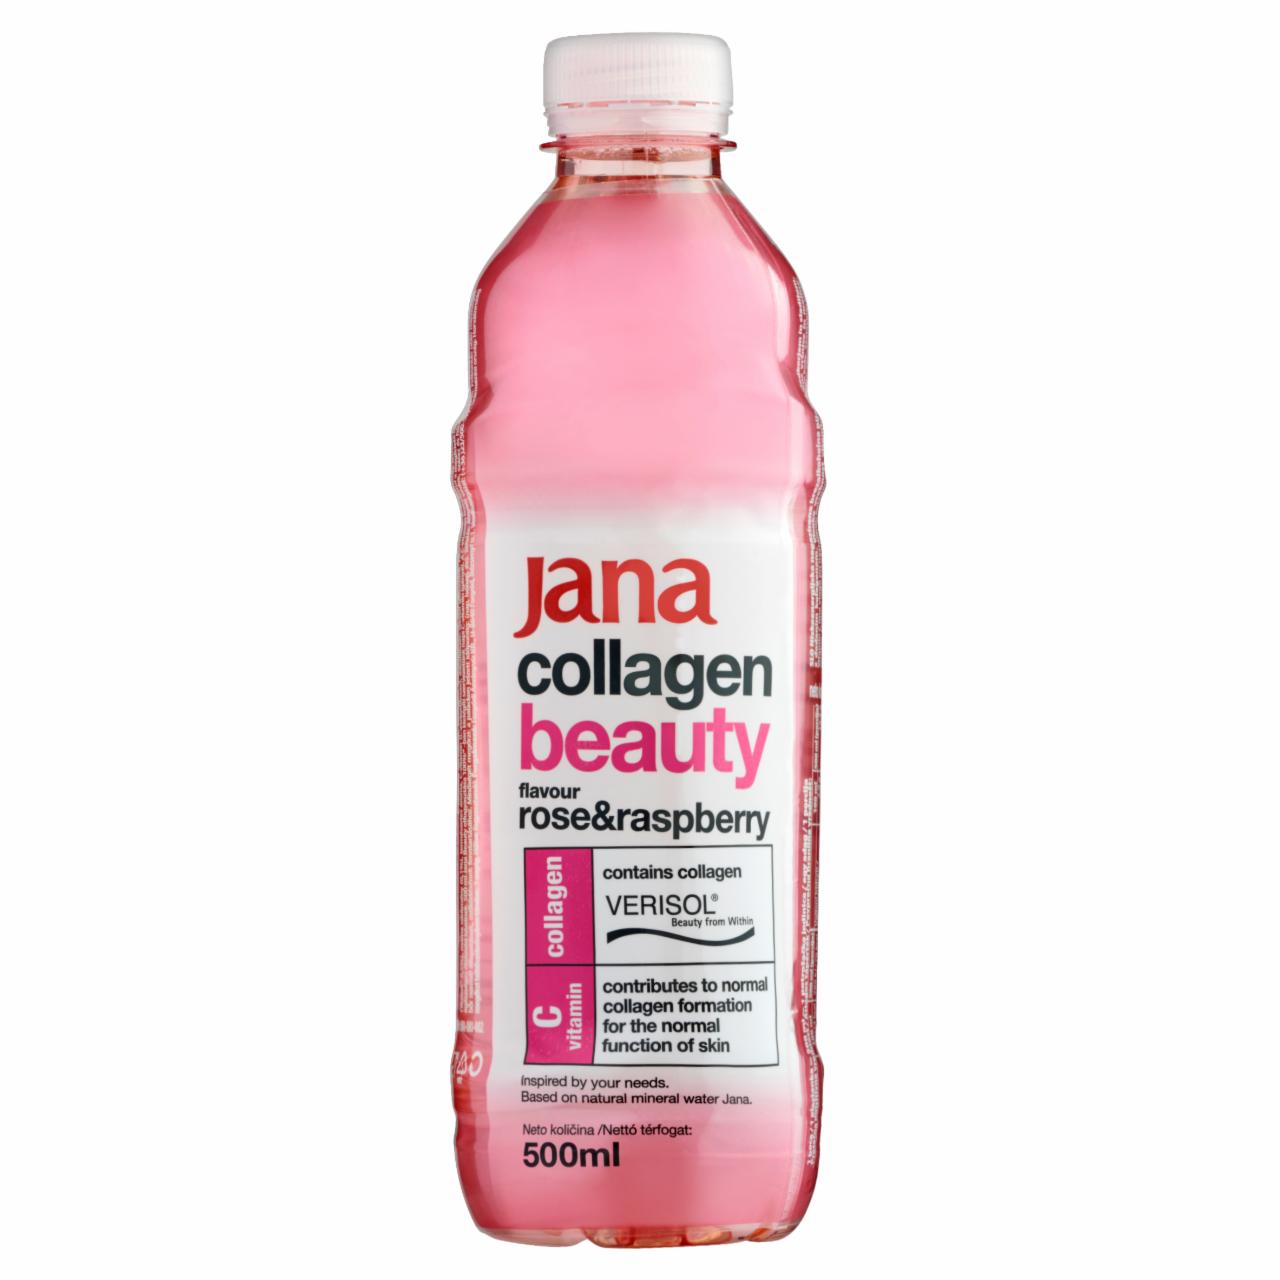 Képek - Jana Collagen Beauty rózsa és málna ízű szénsav- és alkoholmentes üdítőital 500 ml